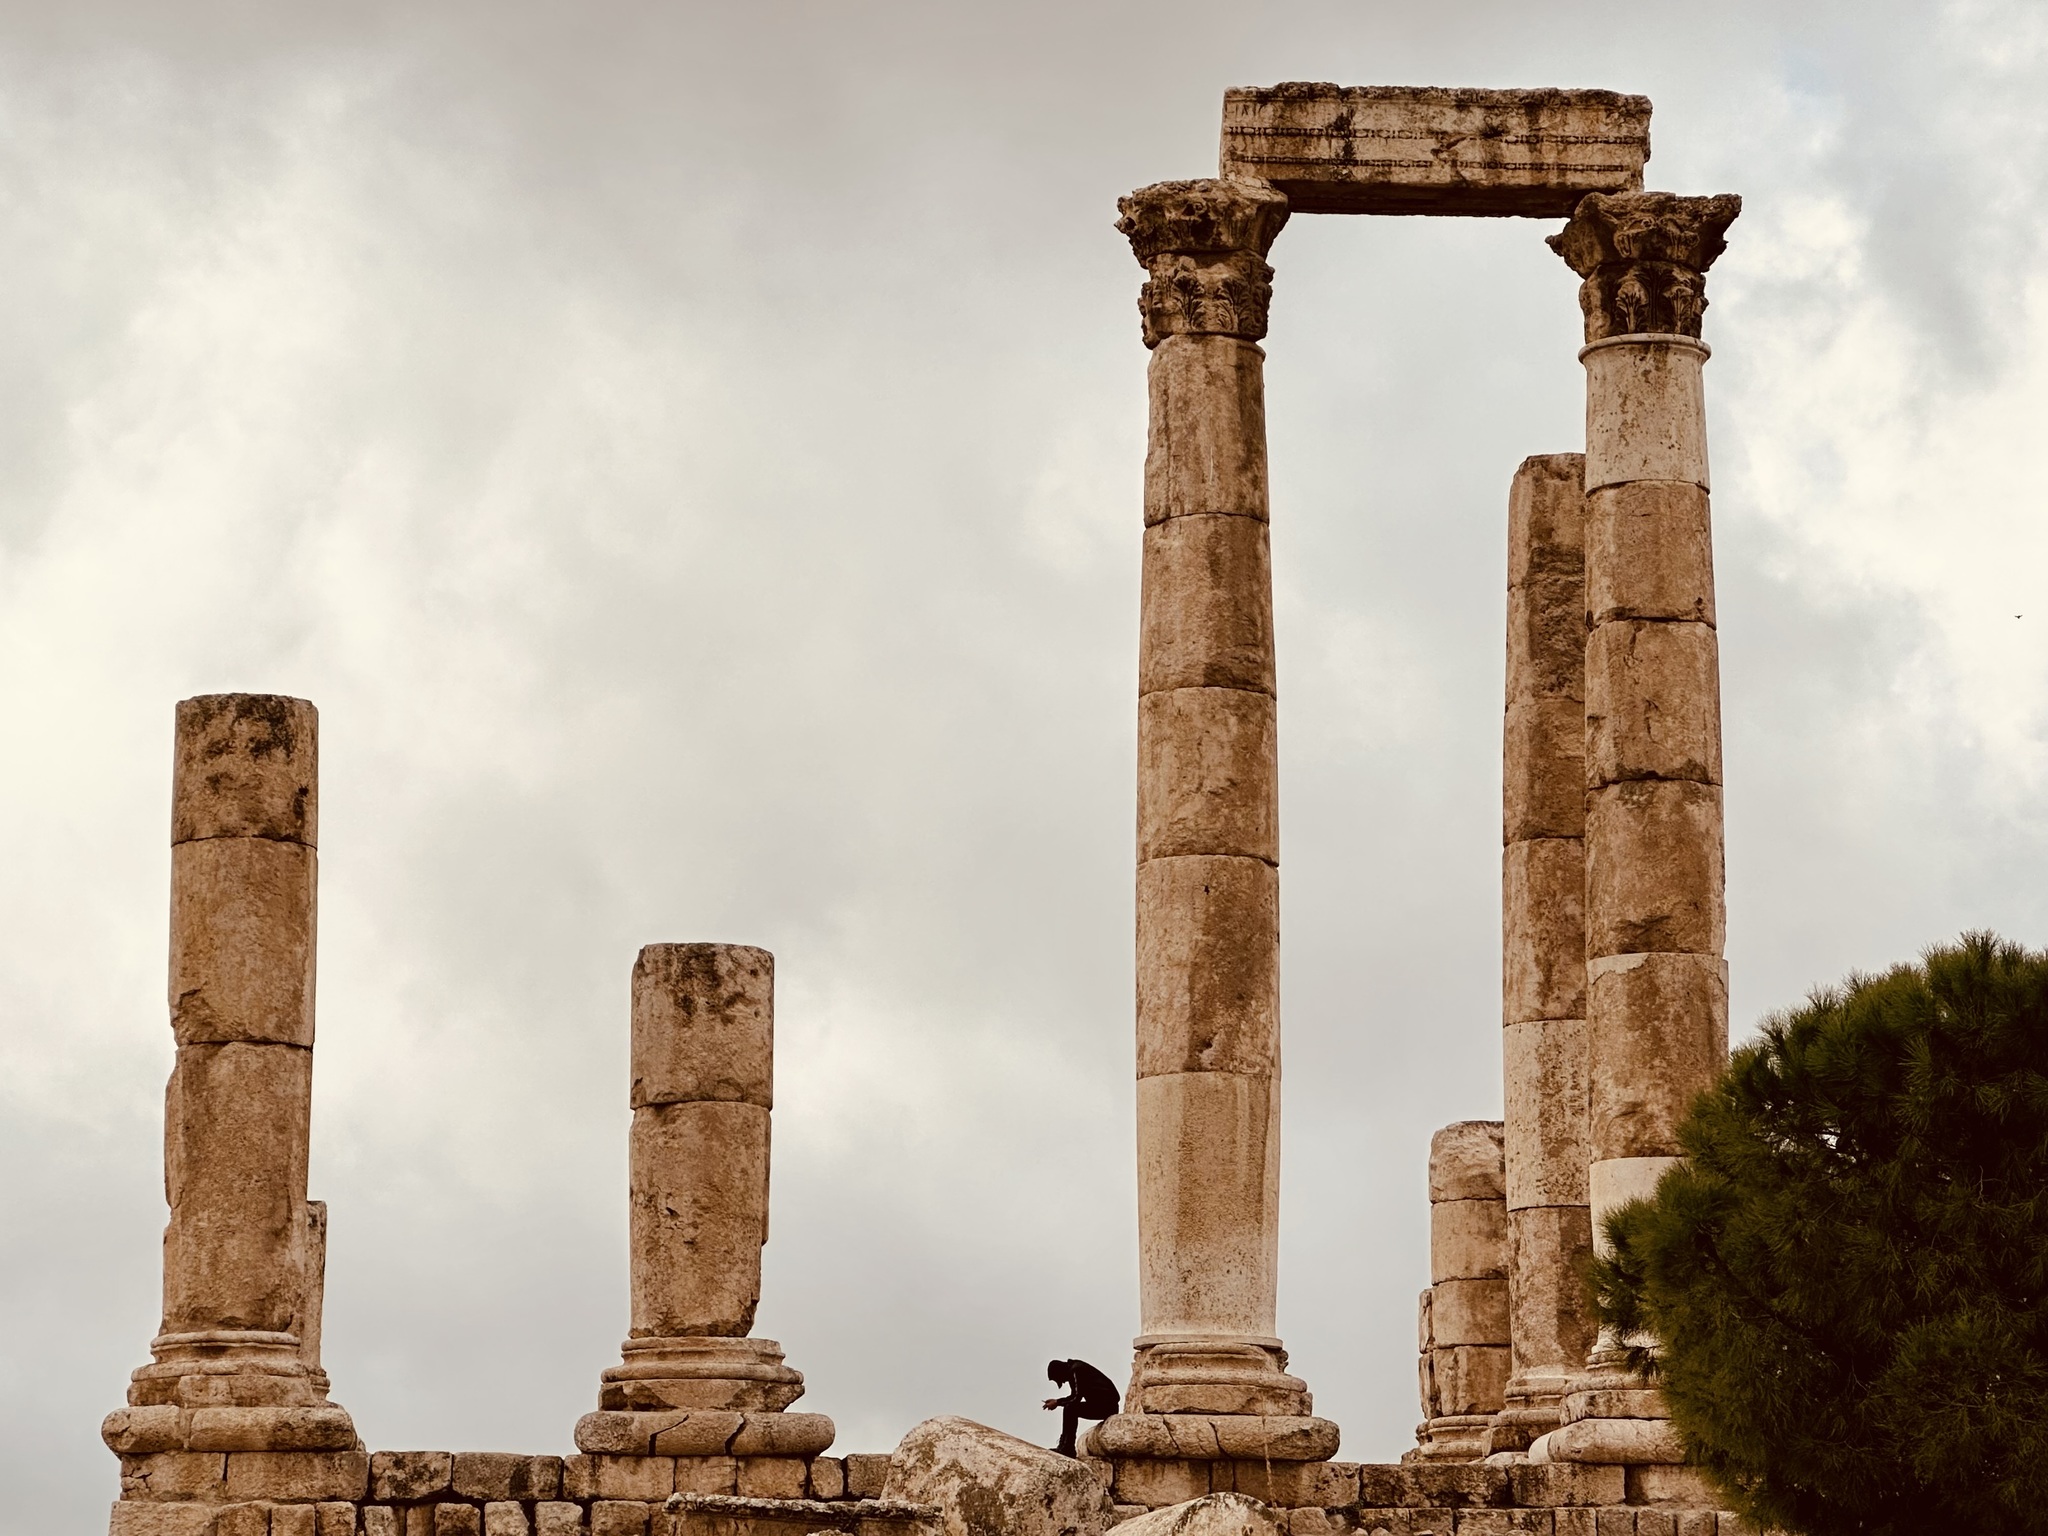 Temple of Hercules in Ammn, Jordan.